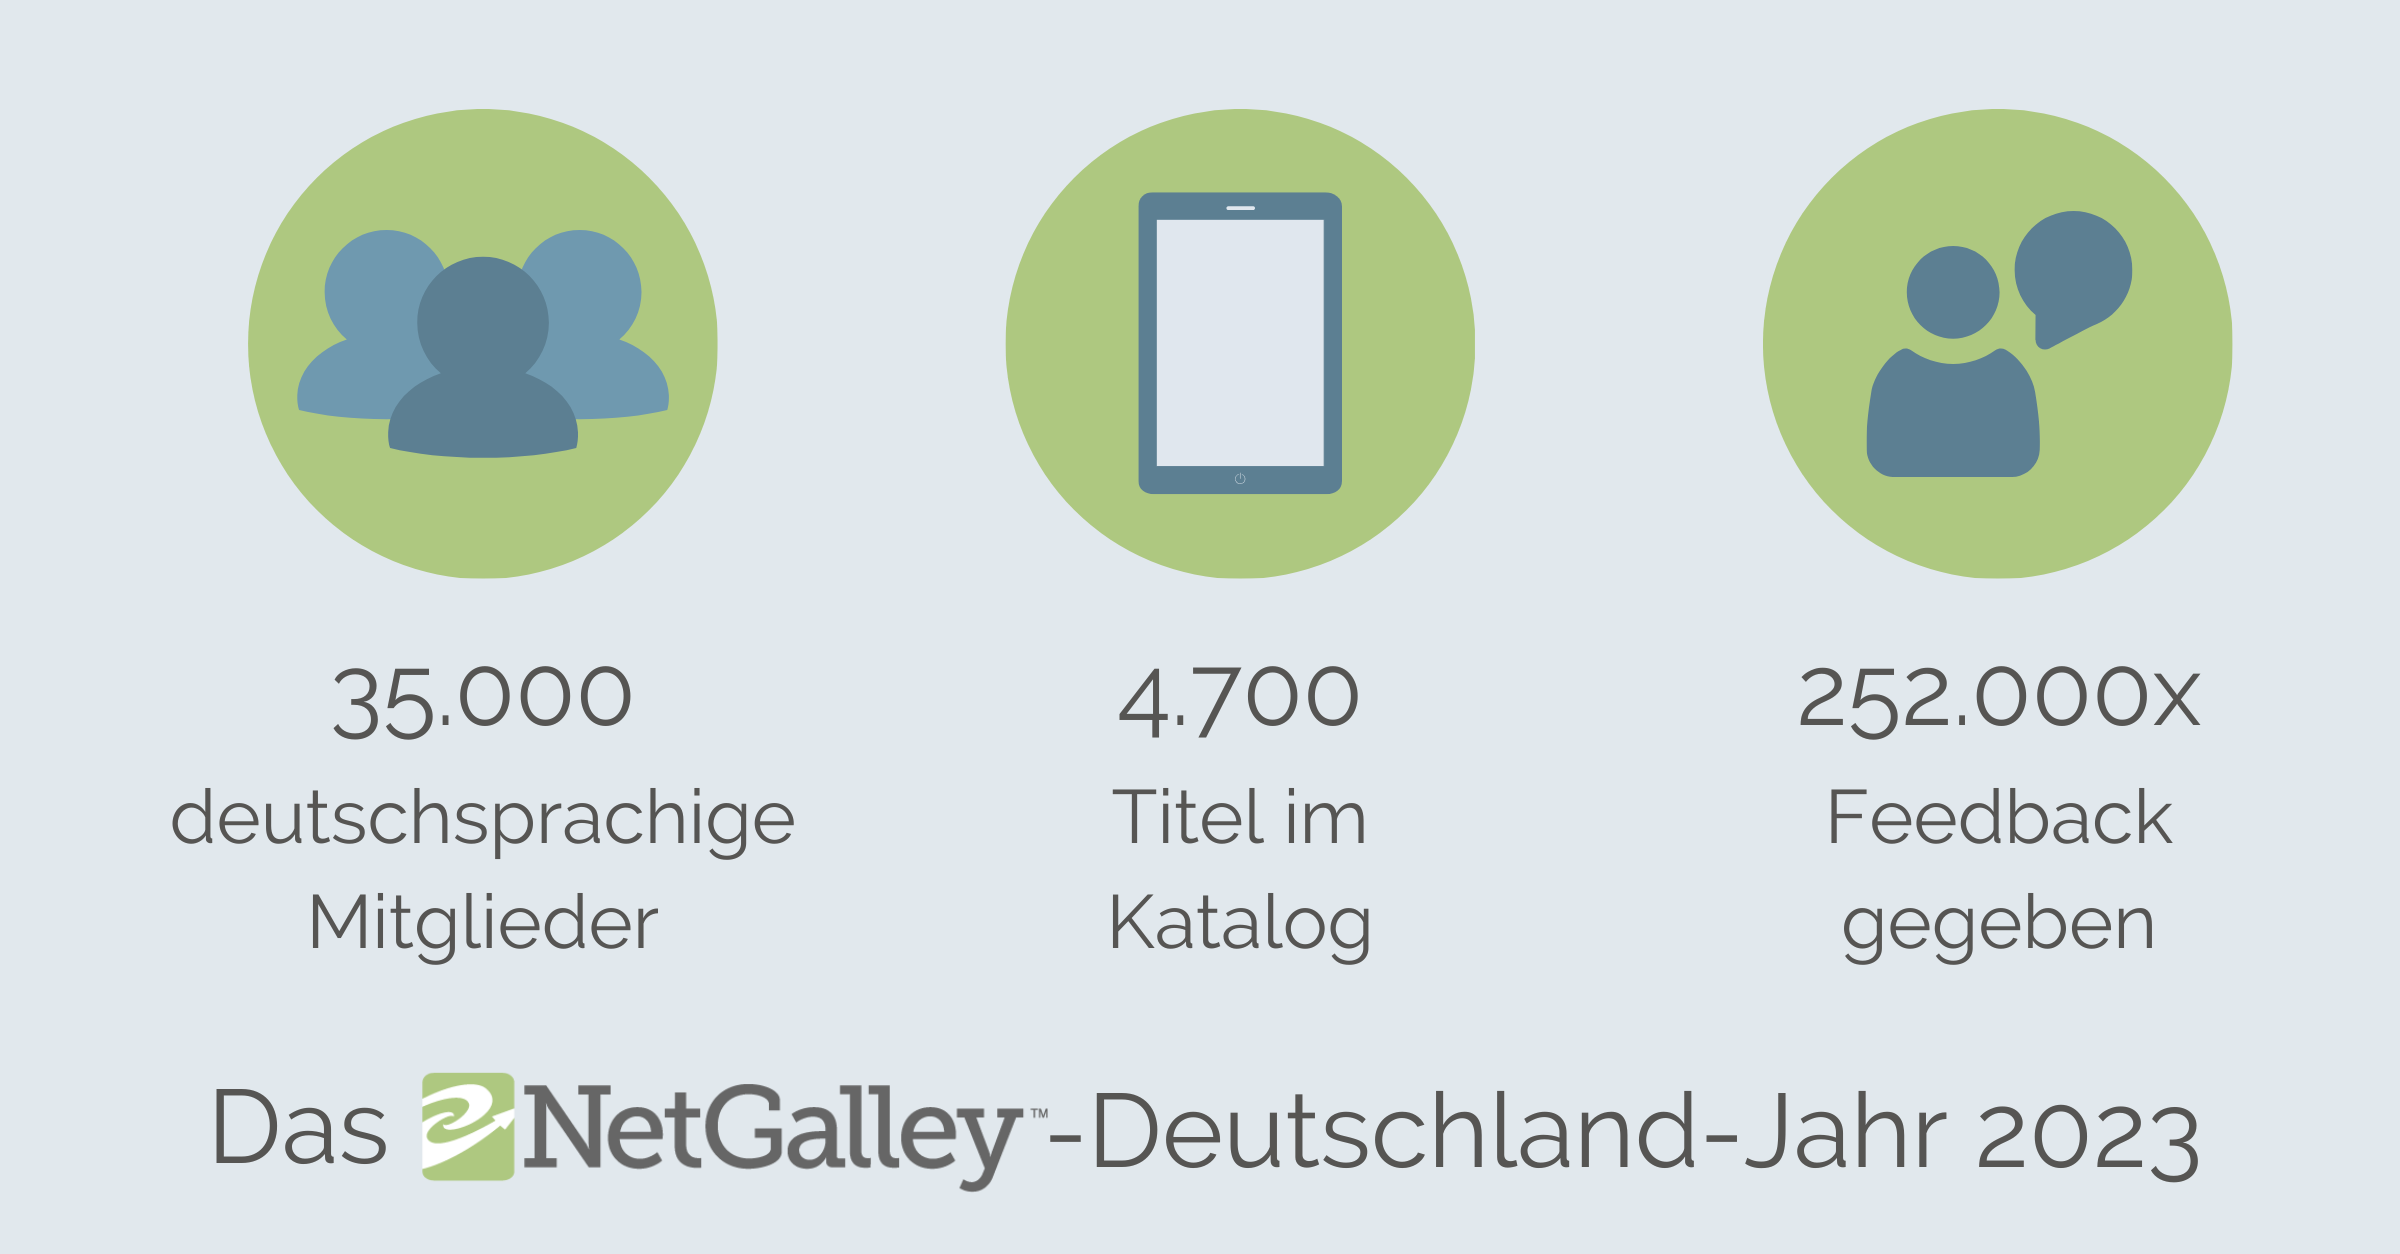 Die Grafik zeigt drei Werte: Im Jahr 2023 hatte NetGalley 35.000 deutschsprachige Mitglieder, 4.700 Titel im Katalog und es wurde 252.000 mal Feedback gegeben.